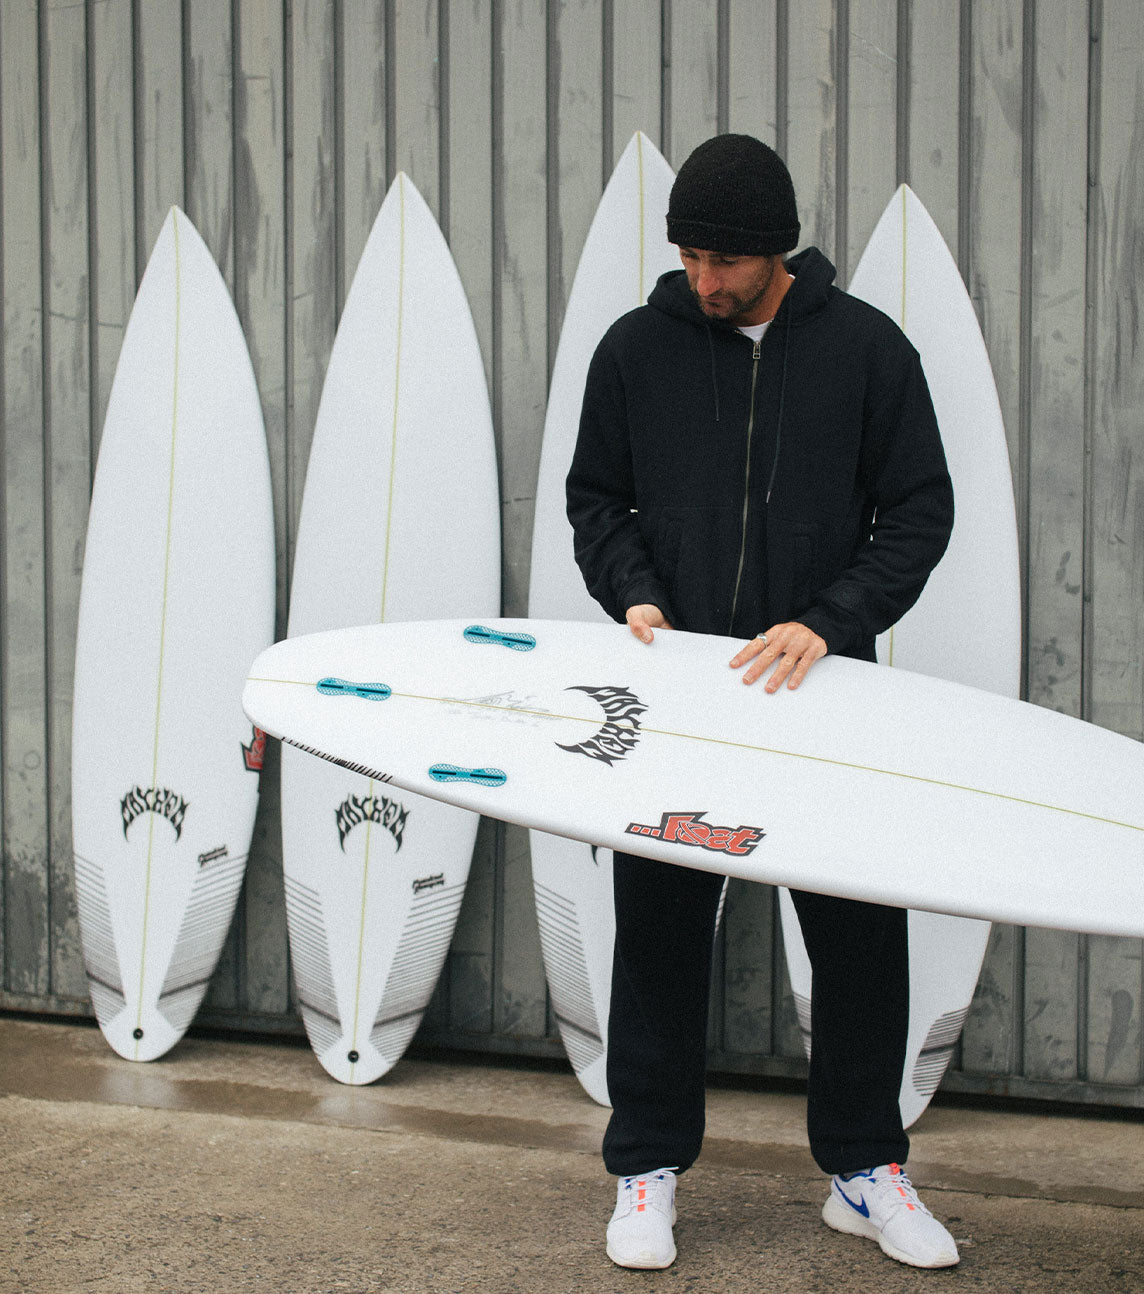 Lost Surfboard - SUB DRIVER 2.0 by Matt Biolos - Light Speed - 6'0